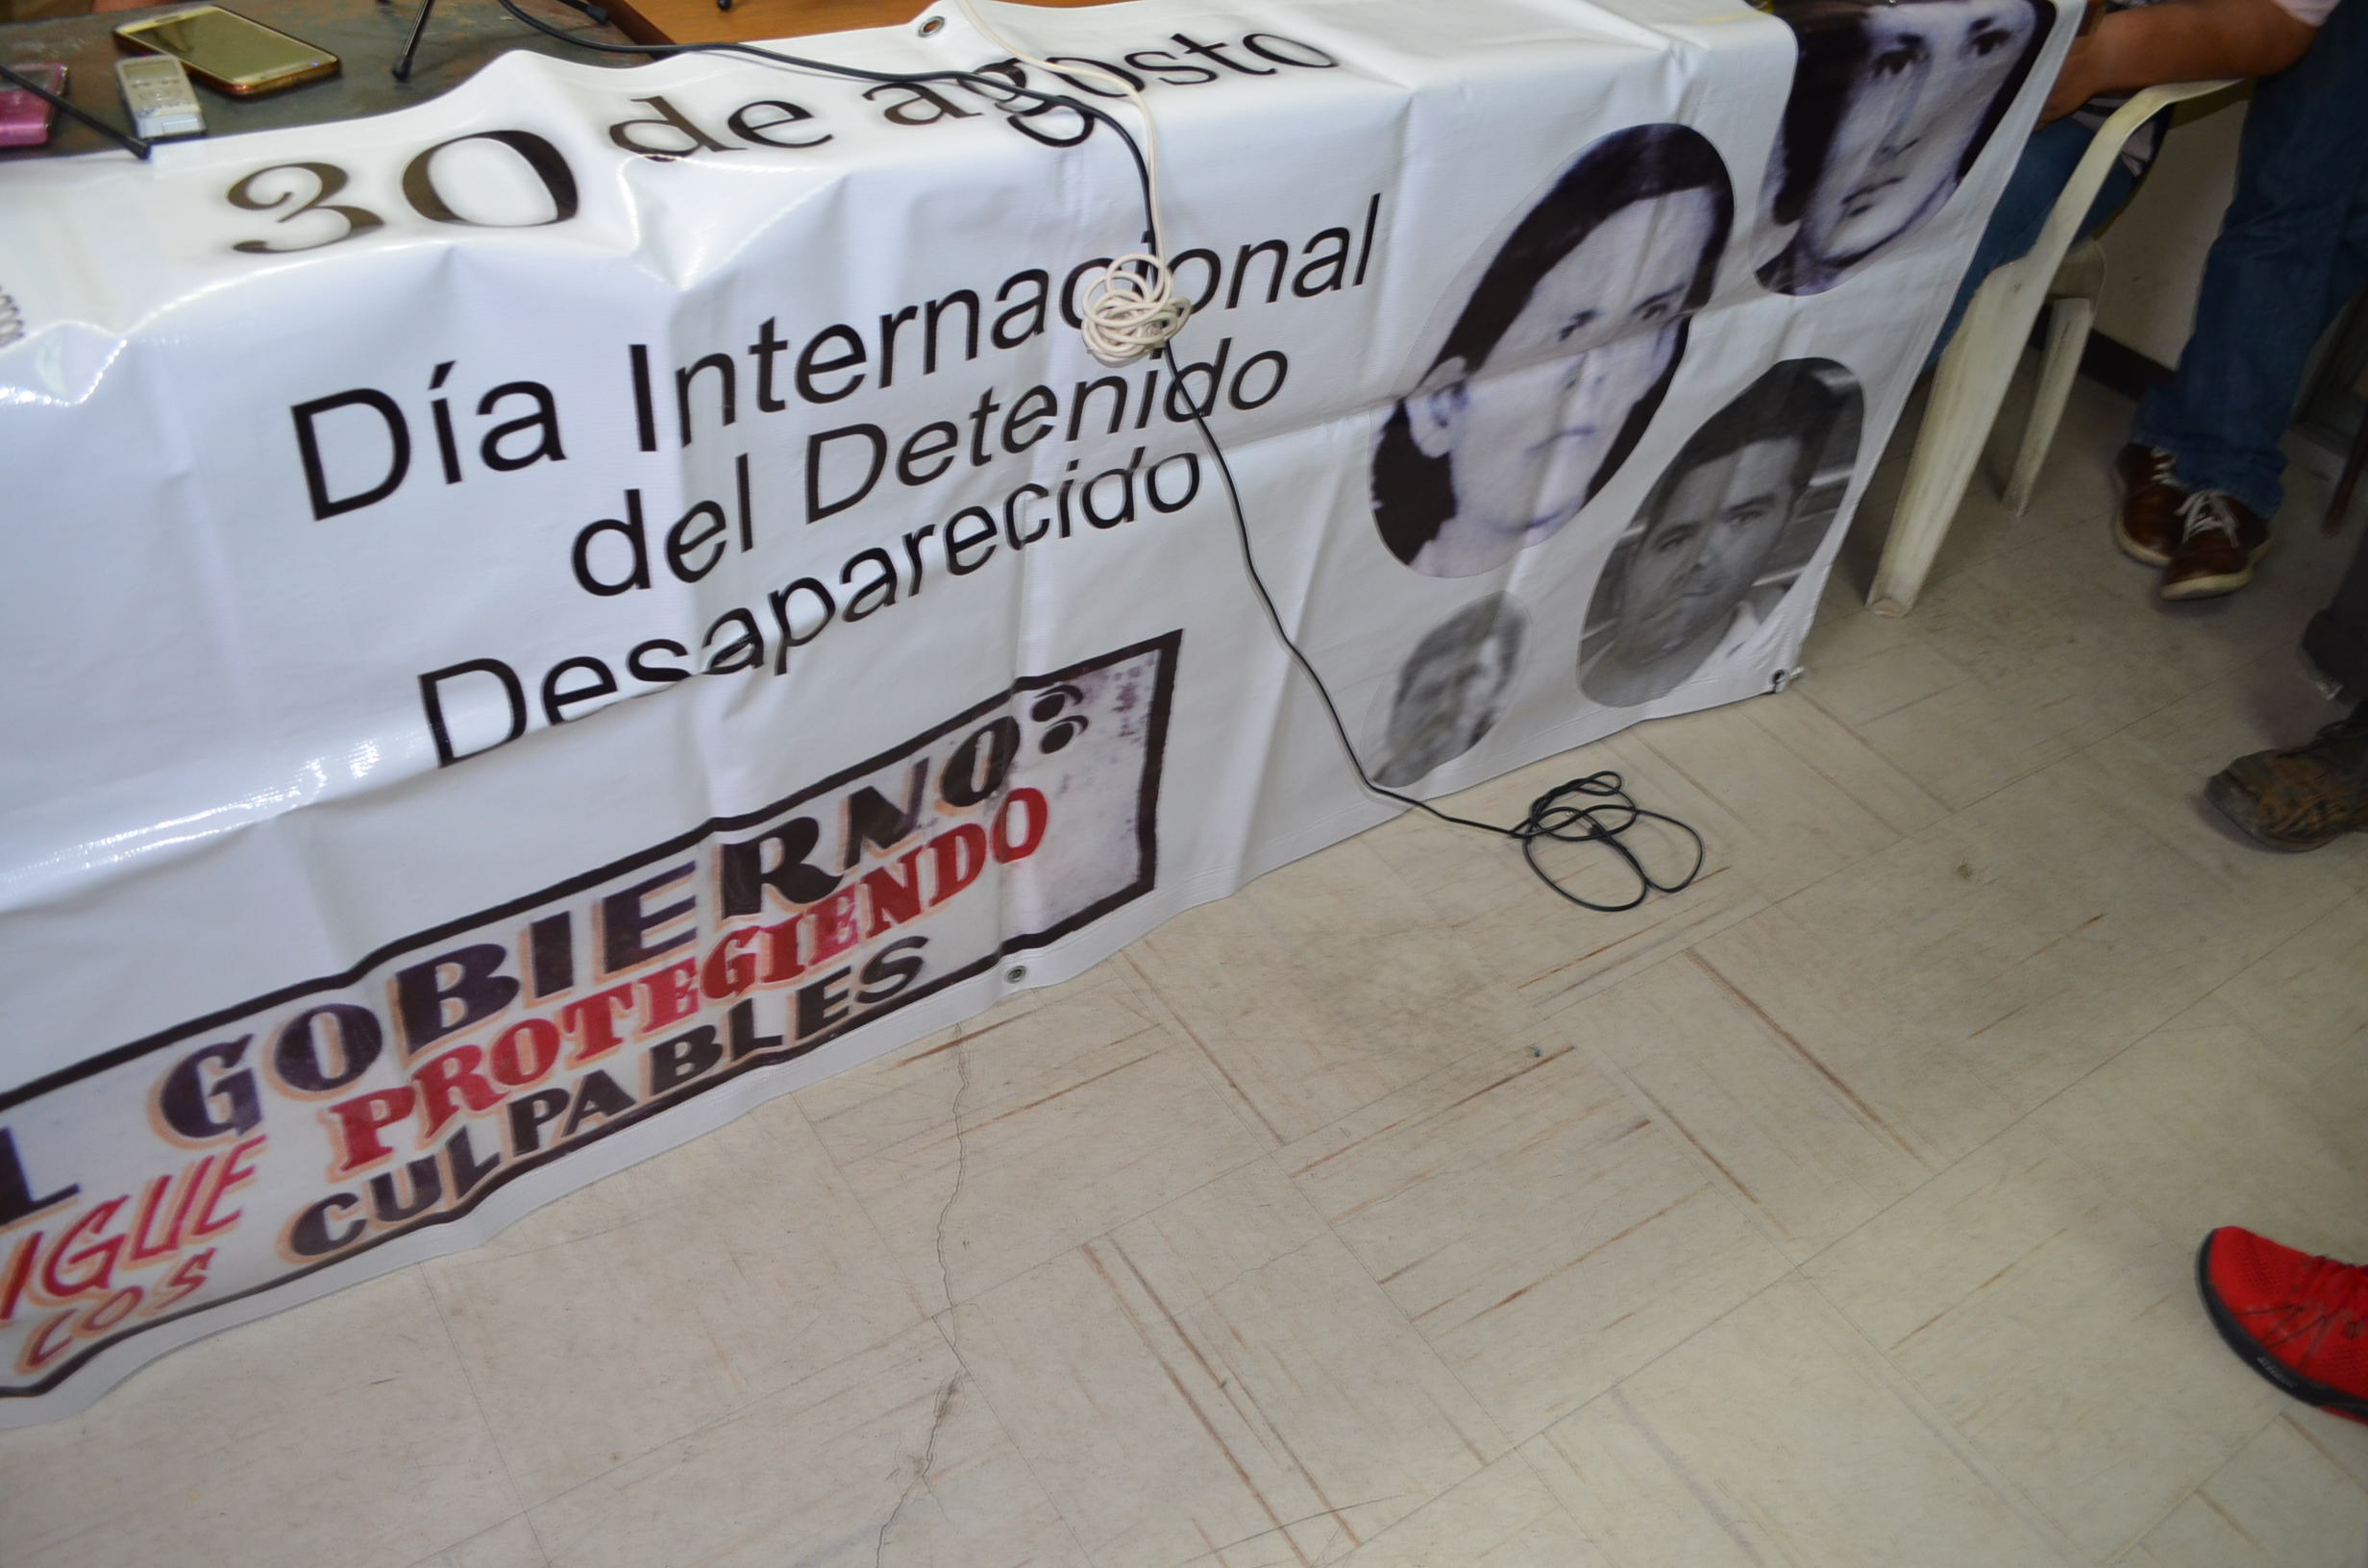 30 de agosto, día internacional de los desaparecidos. Fotografía Gabriela Sánchez